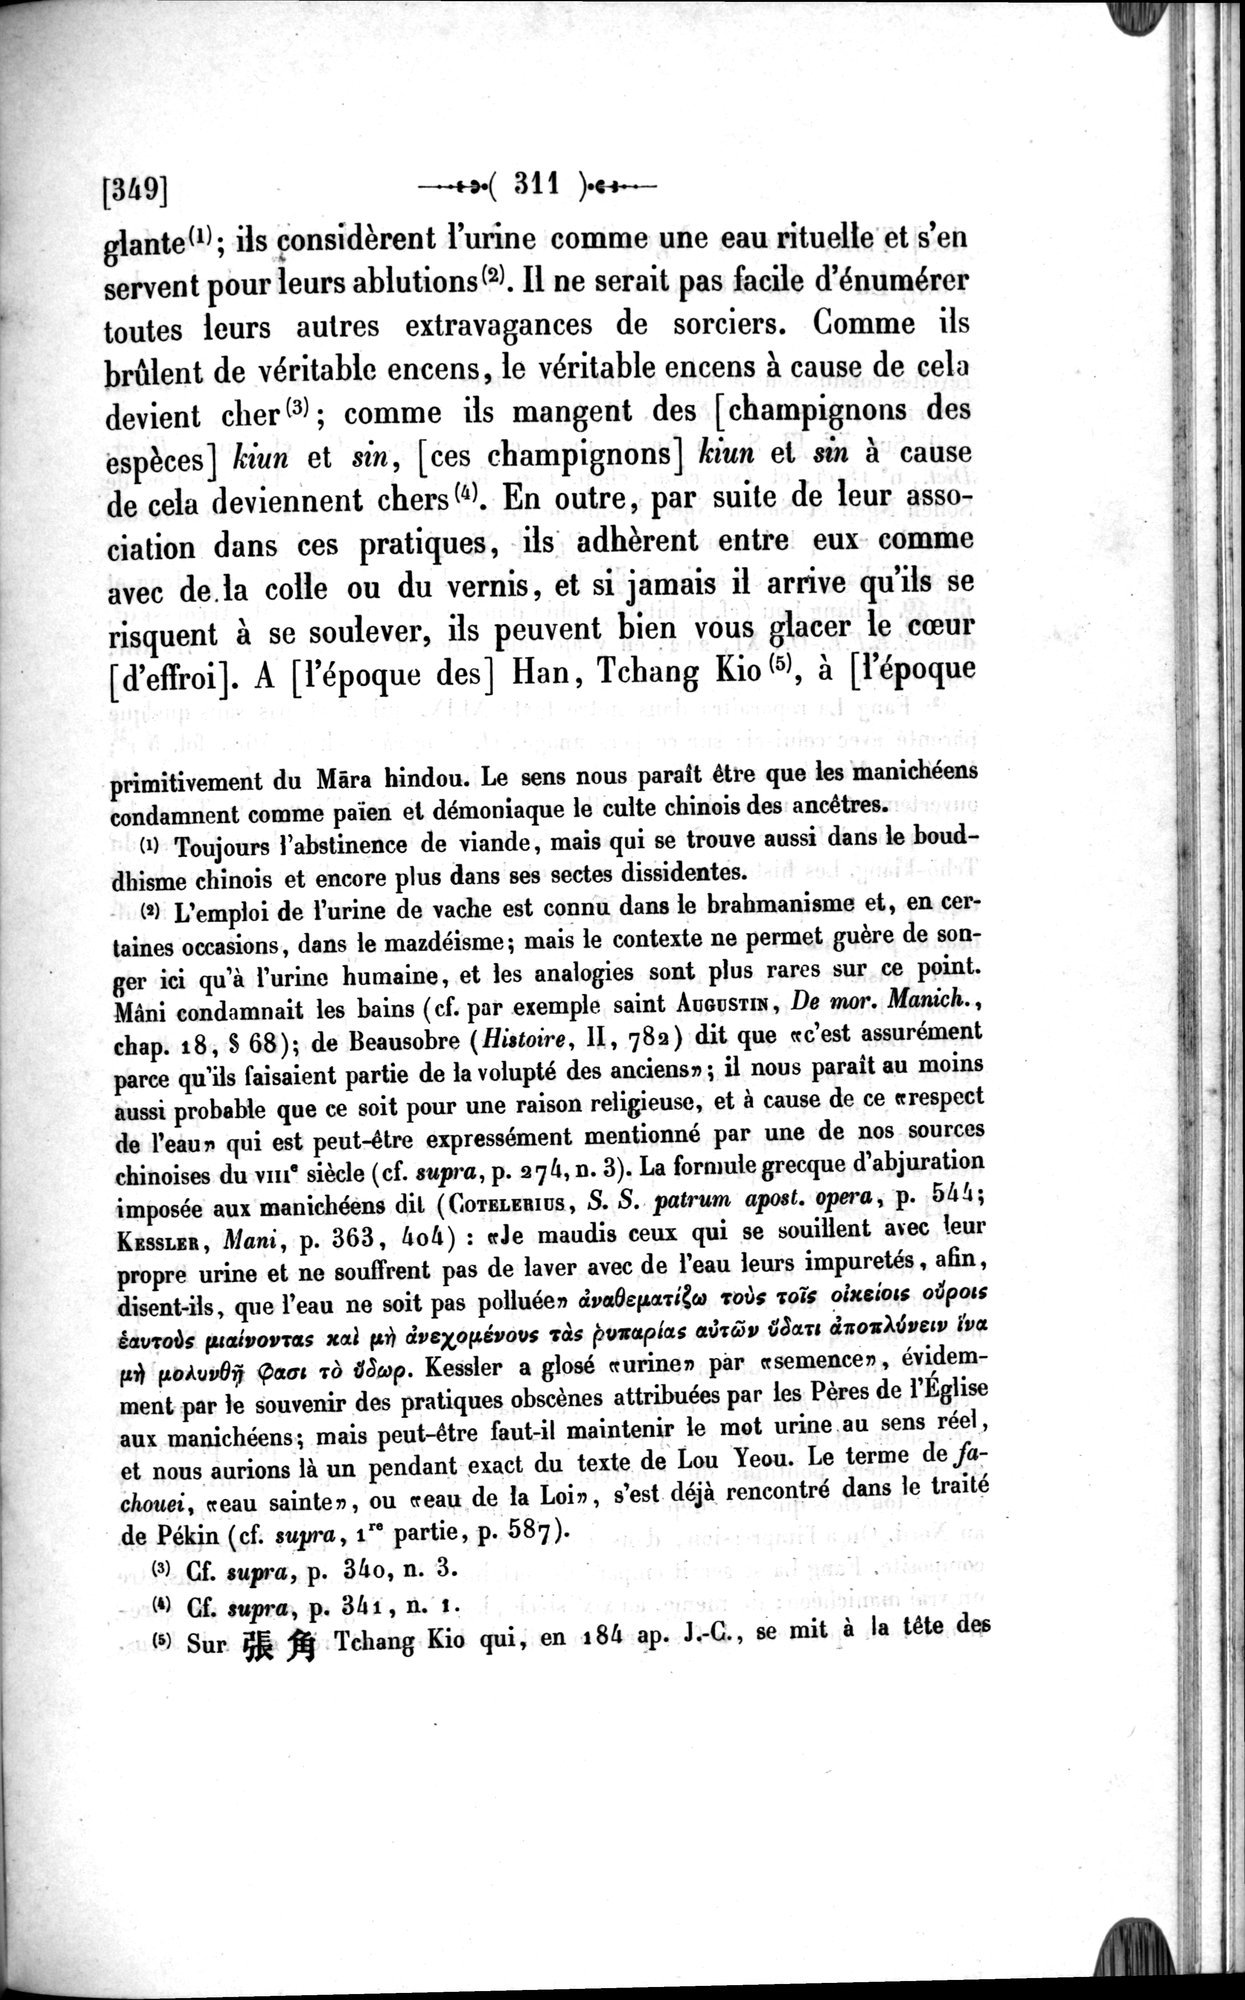 Un traité manichéen retrouvé en Chine : vol.1 / Page 321 (Grayscale High Resolution Image)